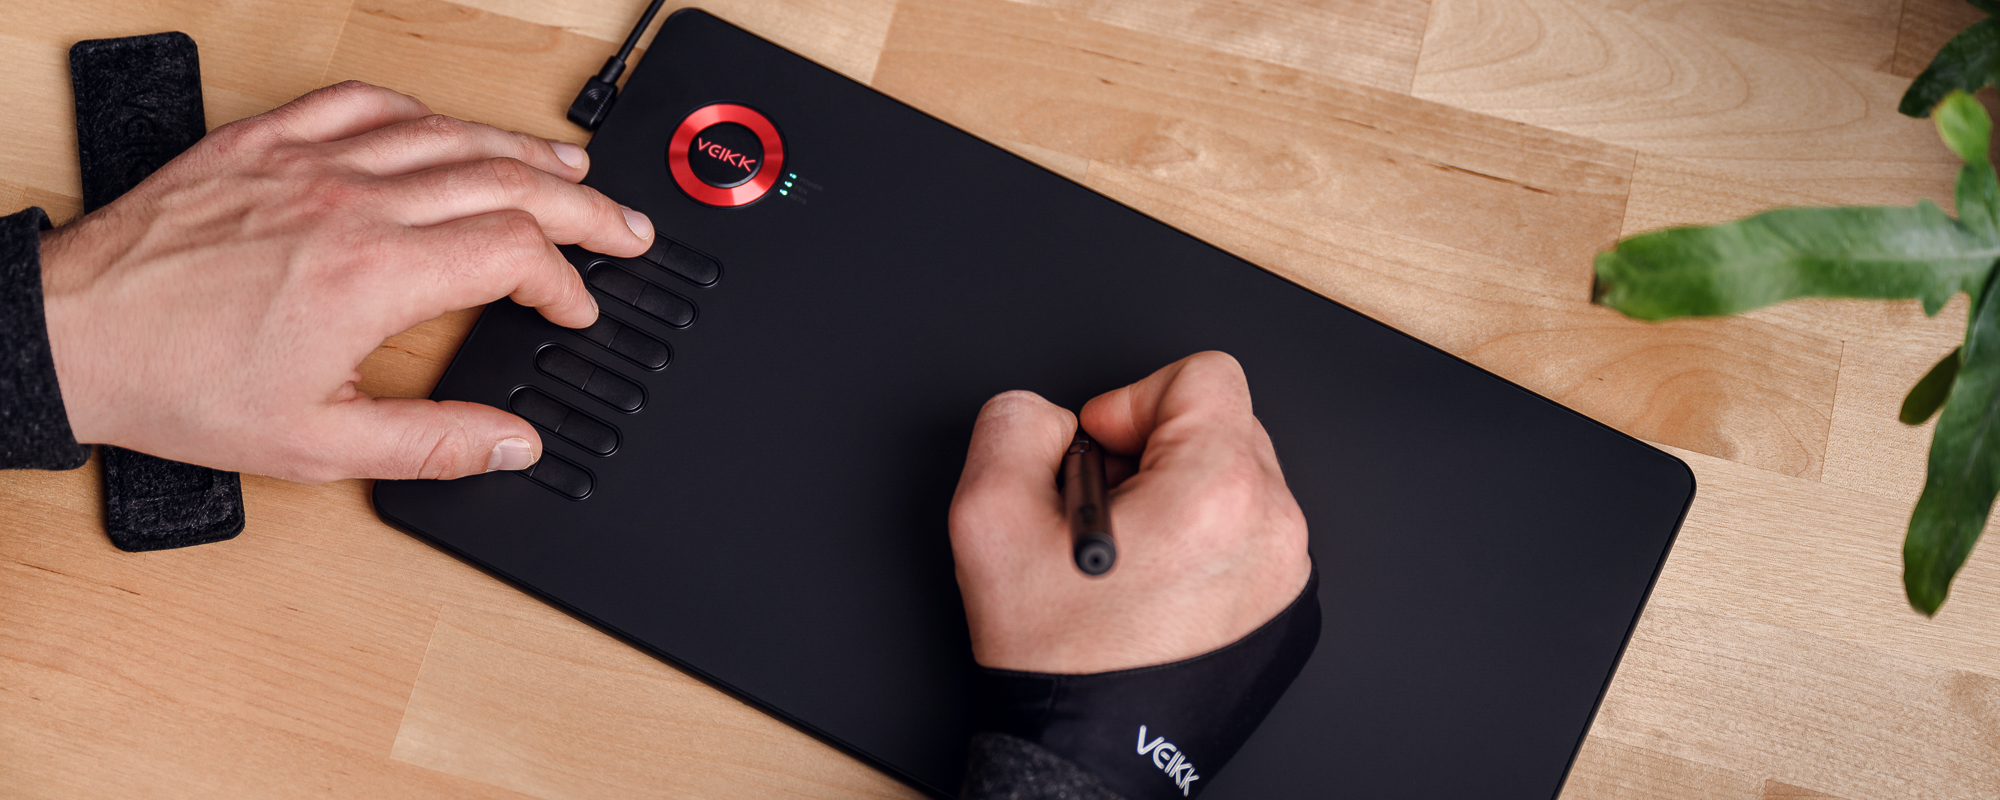 Zdjęcie - tablet graficzny Veikk A15 Pro na jasnobrązowym biurku, lewa dłoń mężczyzny naciska klawisz funkcyjny, prawa obsługuje piórko